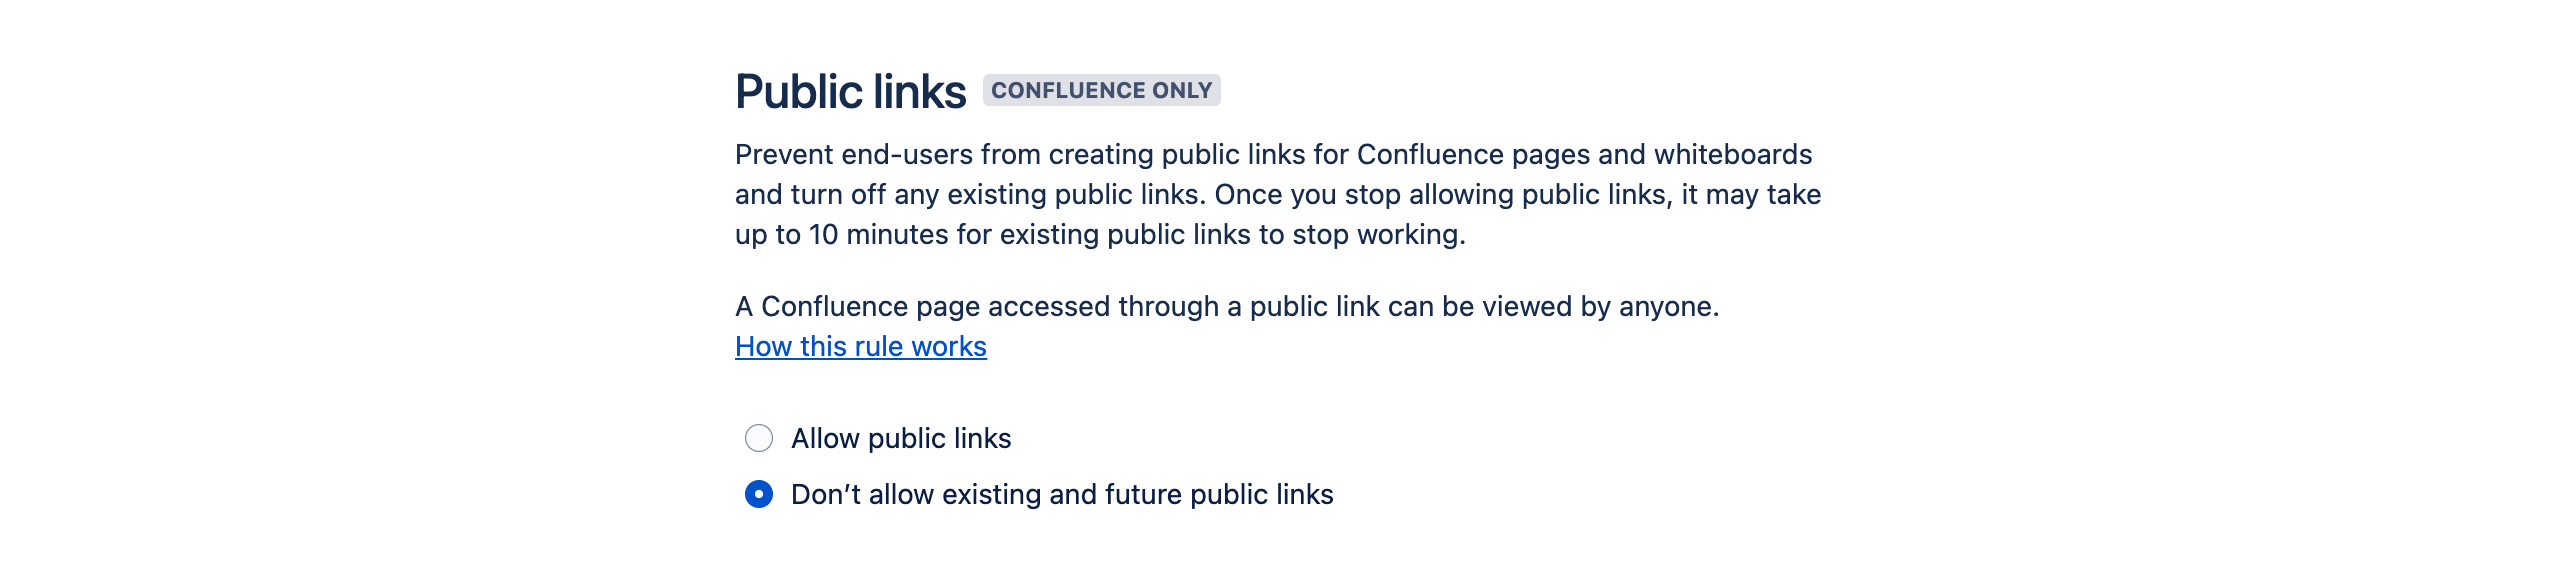 Public links rule configuration options